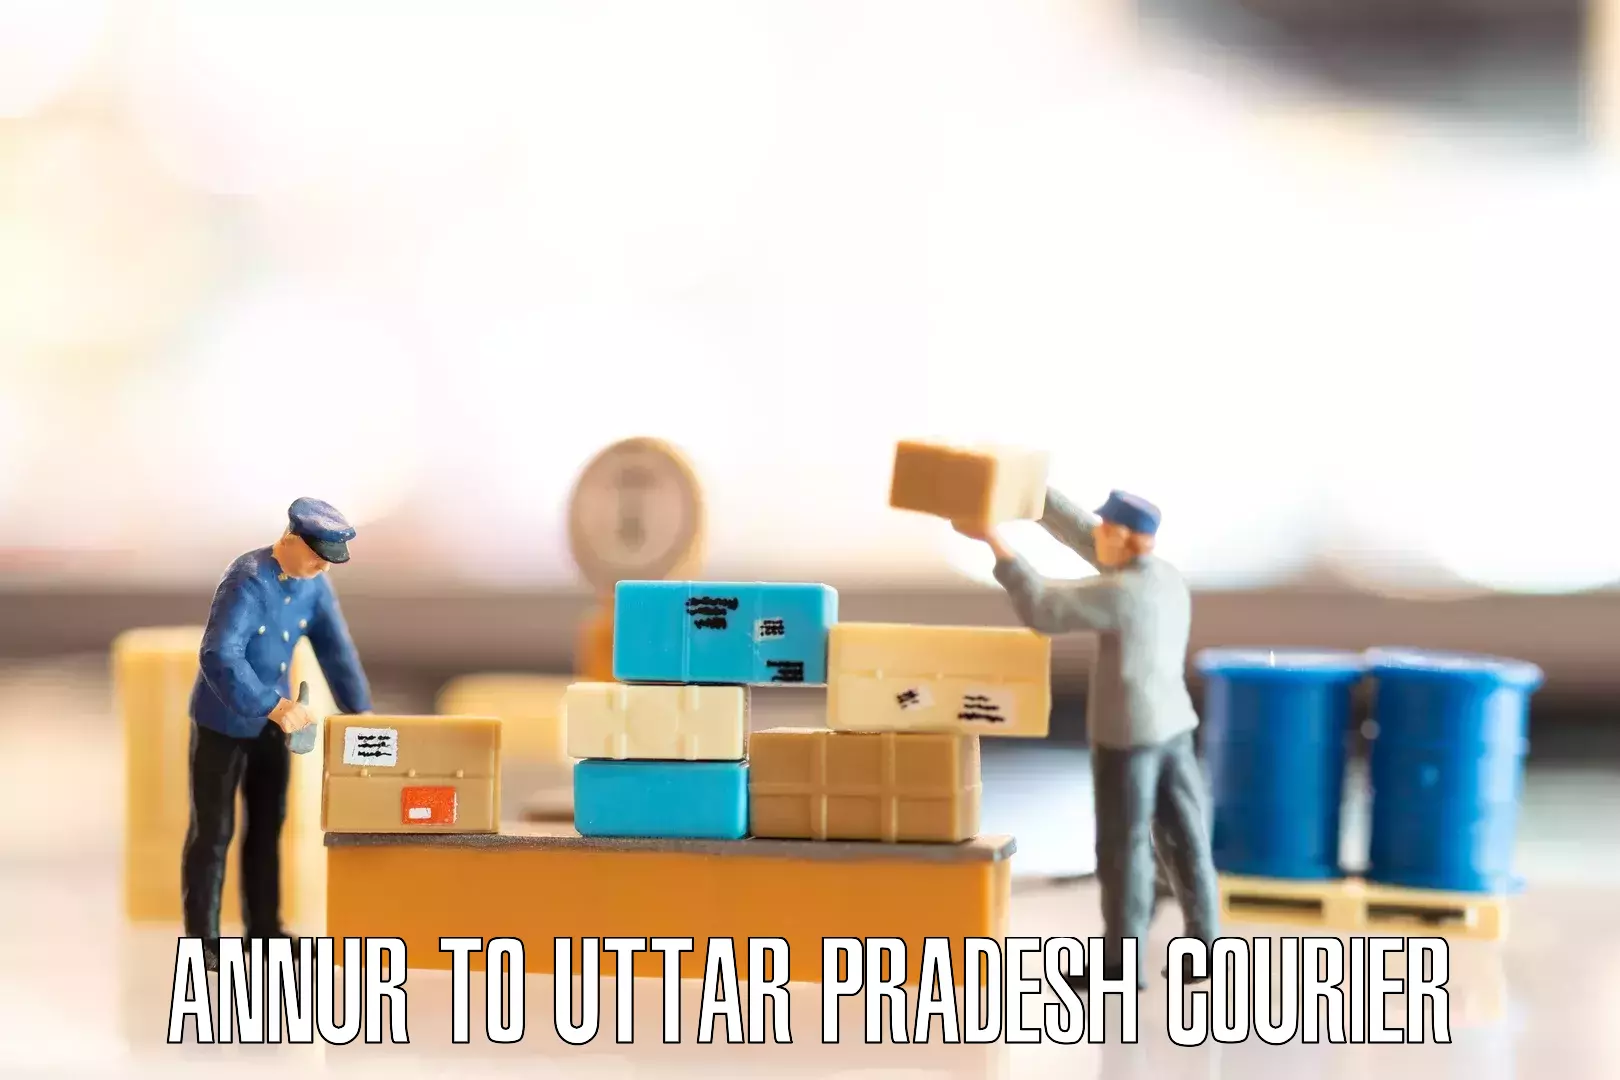 Furniture transport and storage in Annur to Uttar Pradesh